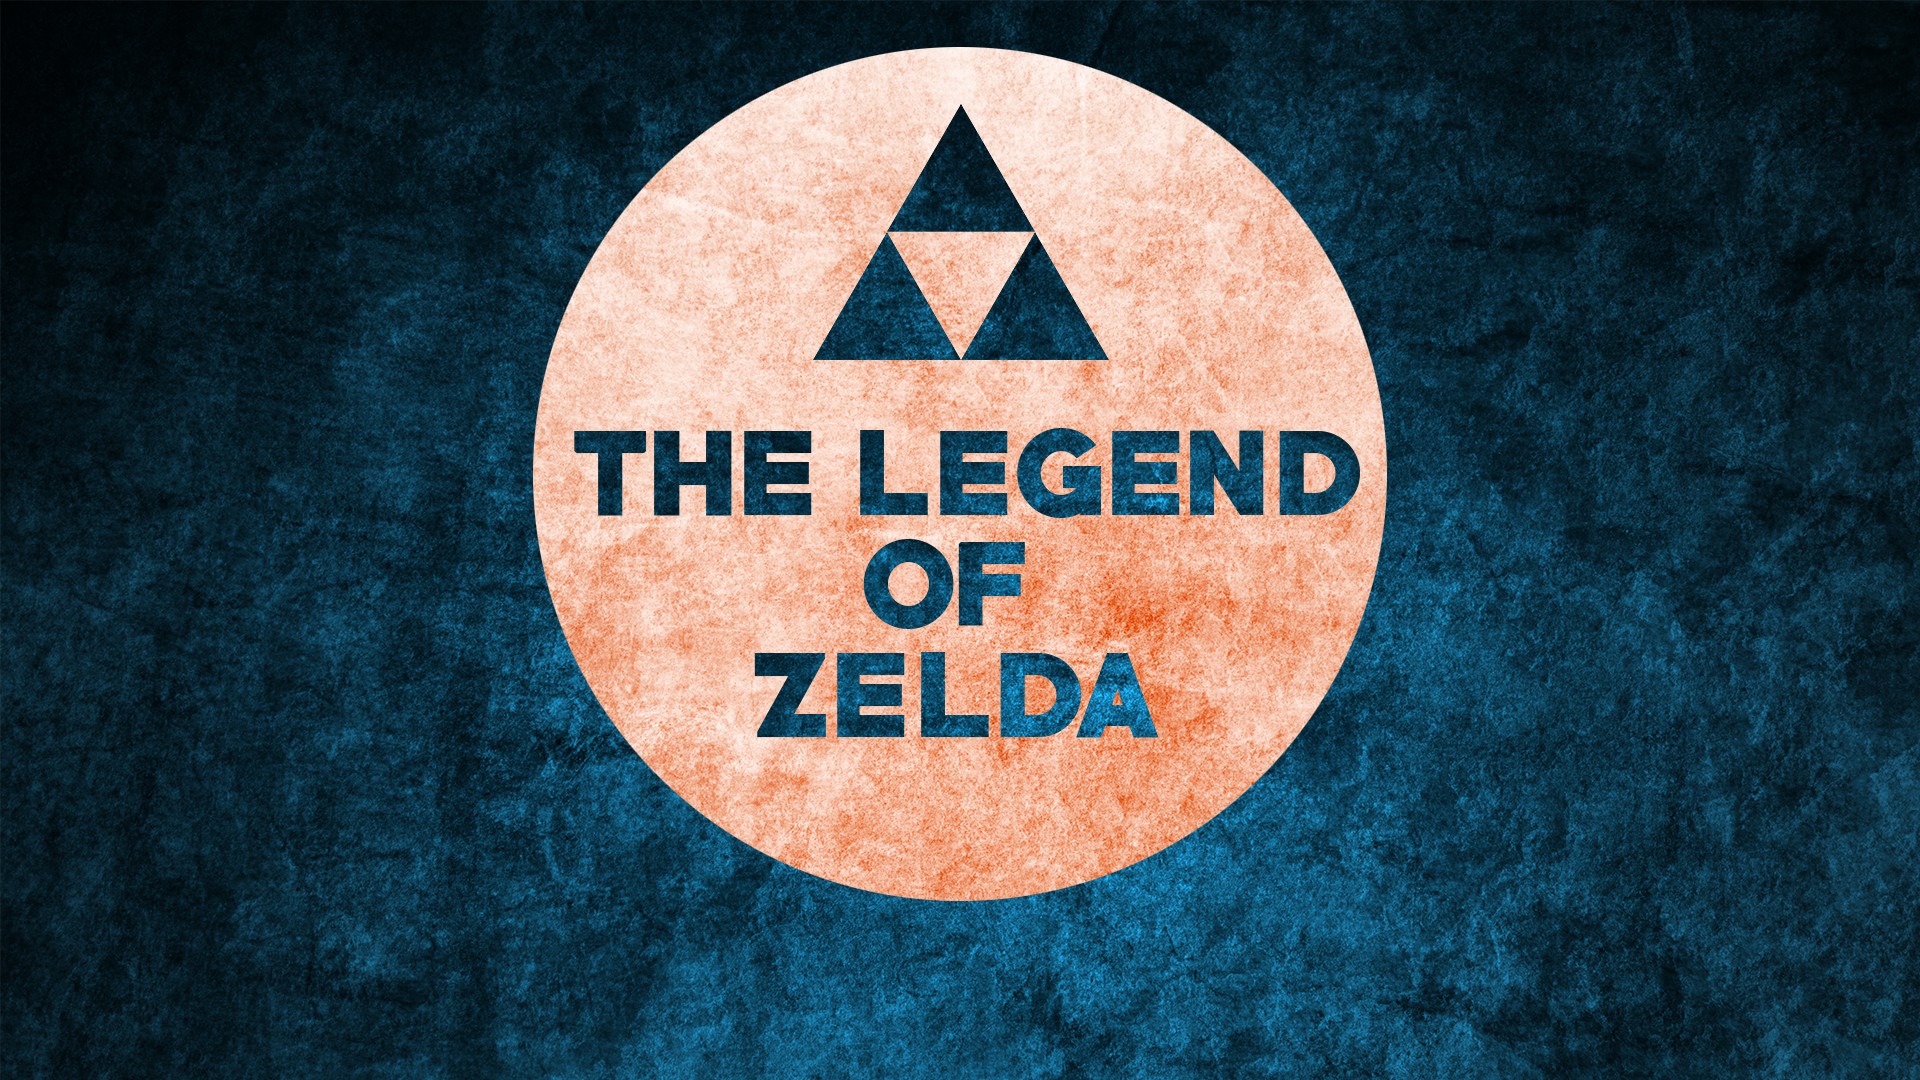 Zelda, The Legend of Zelda, Nintendo, Simple, Simple background, Blue Wallpaper